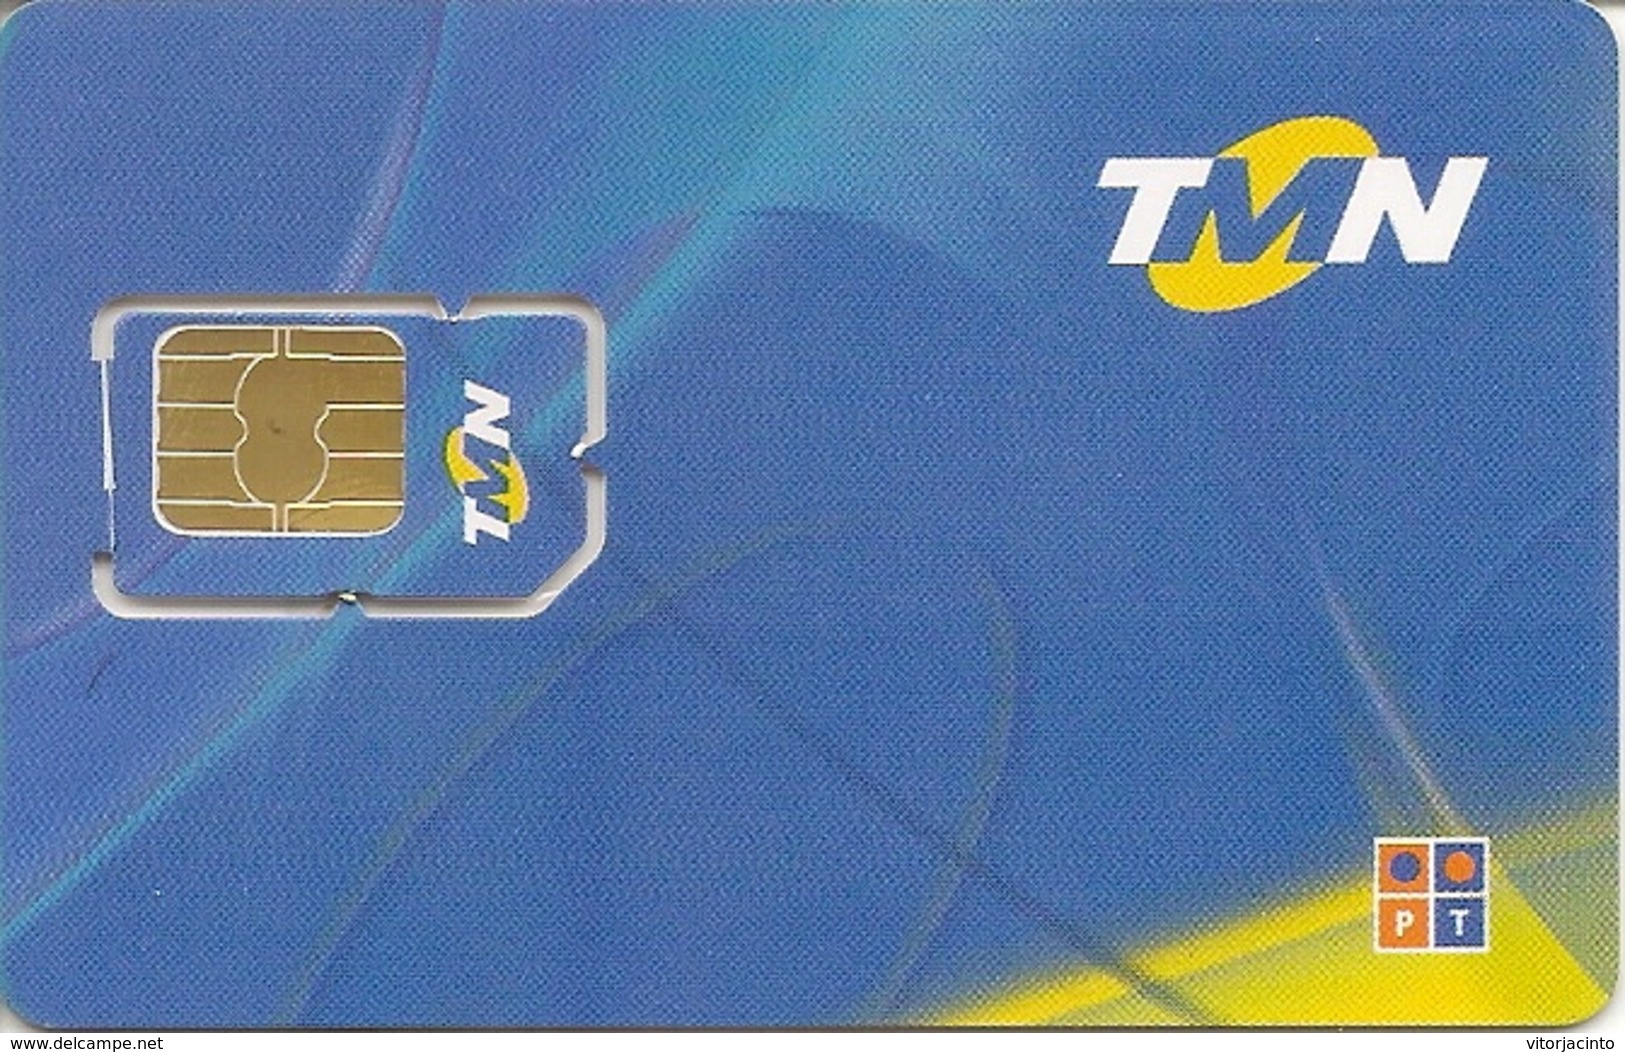 Mobile Phonecard - TMN PT - Portugal - Portogallo